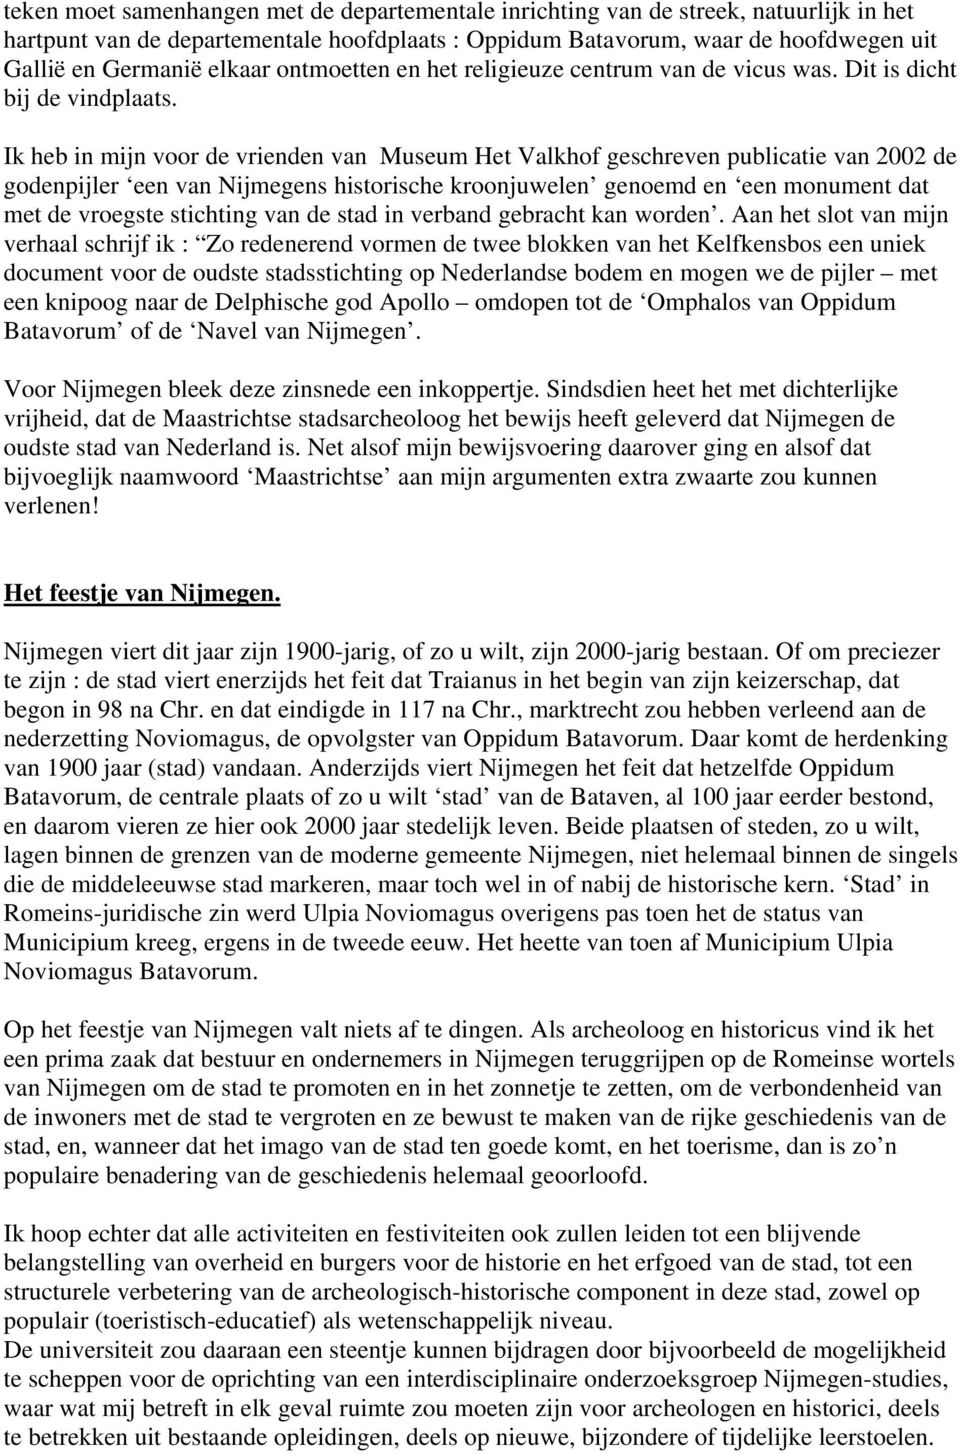 Ik heb in mijn voor de vrienden van Museum Het Valkhof geschreven publicatie van 2002 de godenpijler een van Nijmegens historische kroonjuwelen genoemd en een monument dat met de vroegste stichting